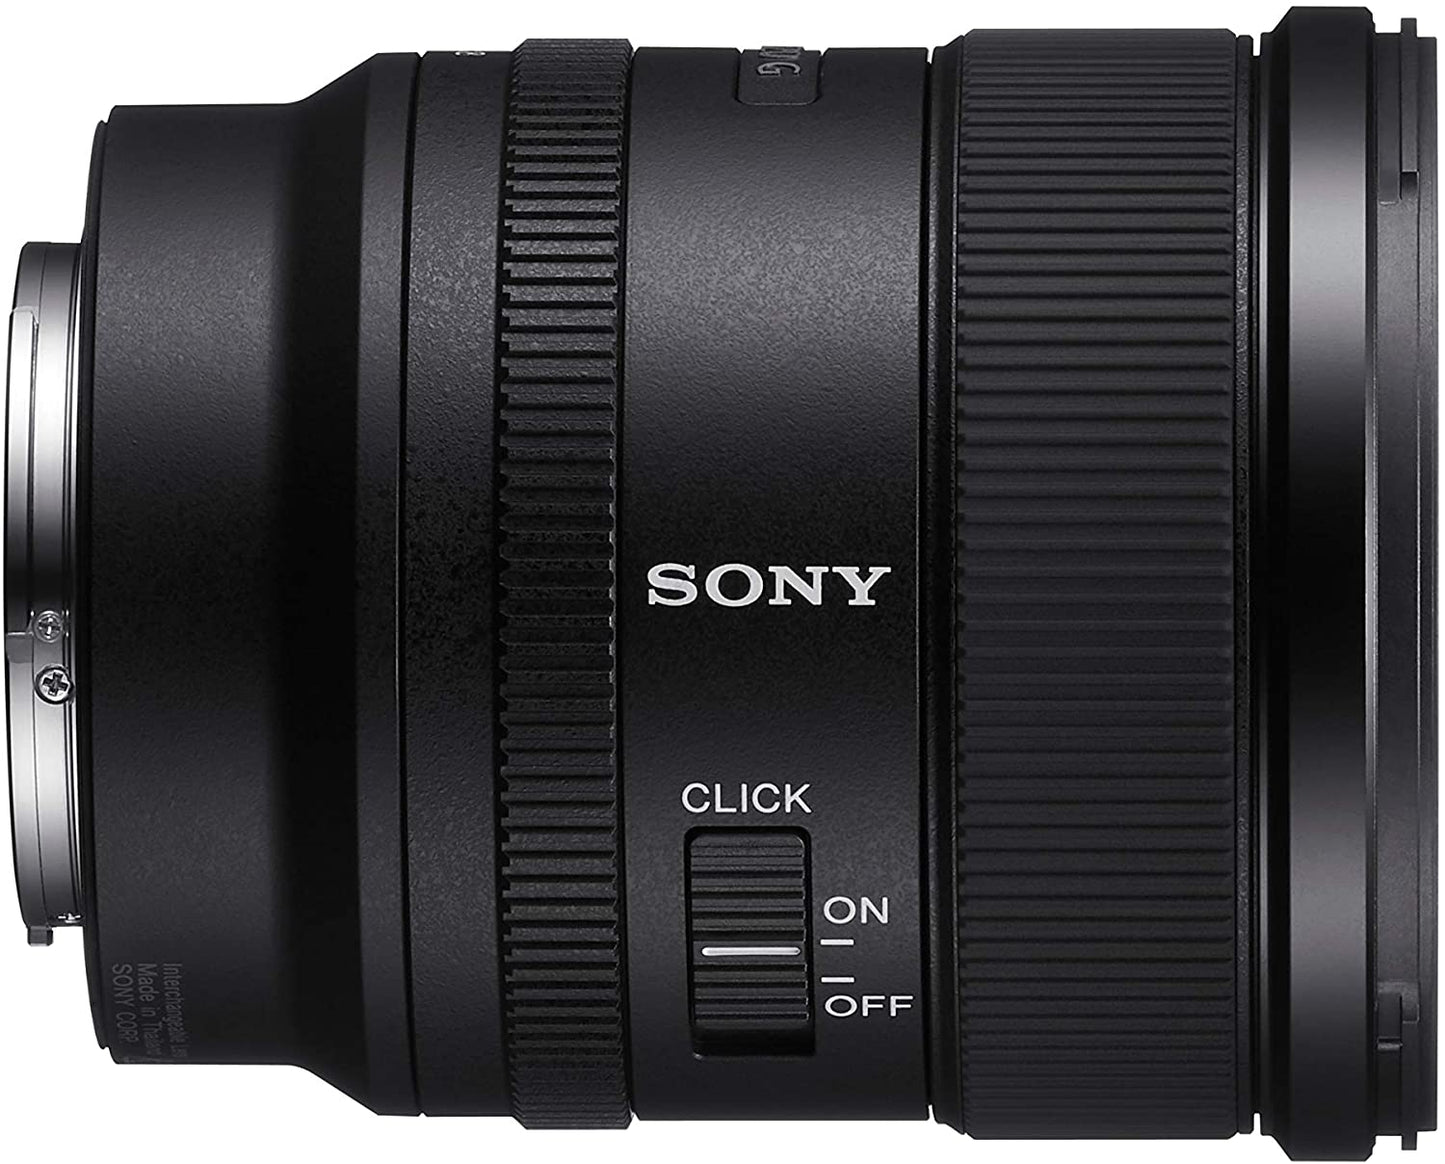 Sony FE 20mm F1.8 G Full-frame Large-aperture Ultra-wide Angle G Lens - SEL20F18G